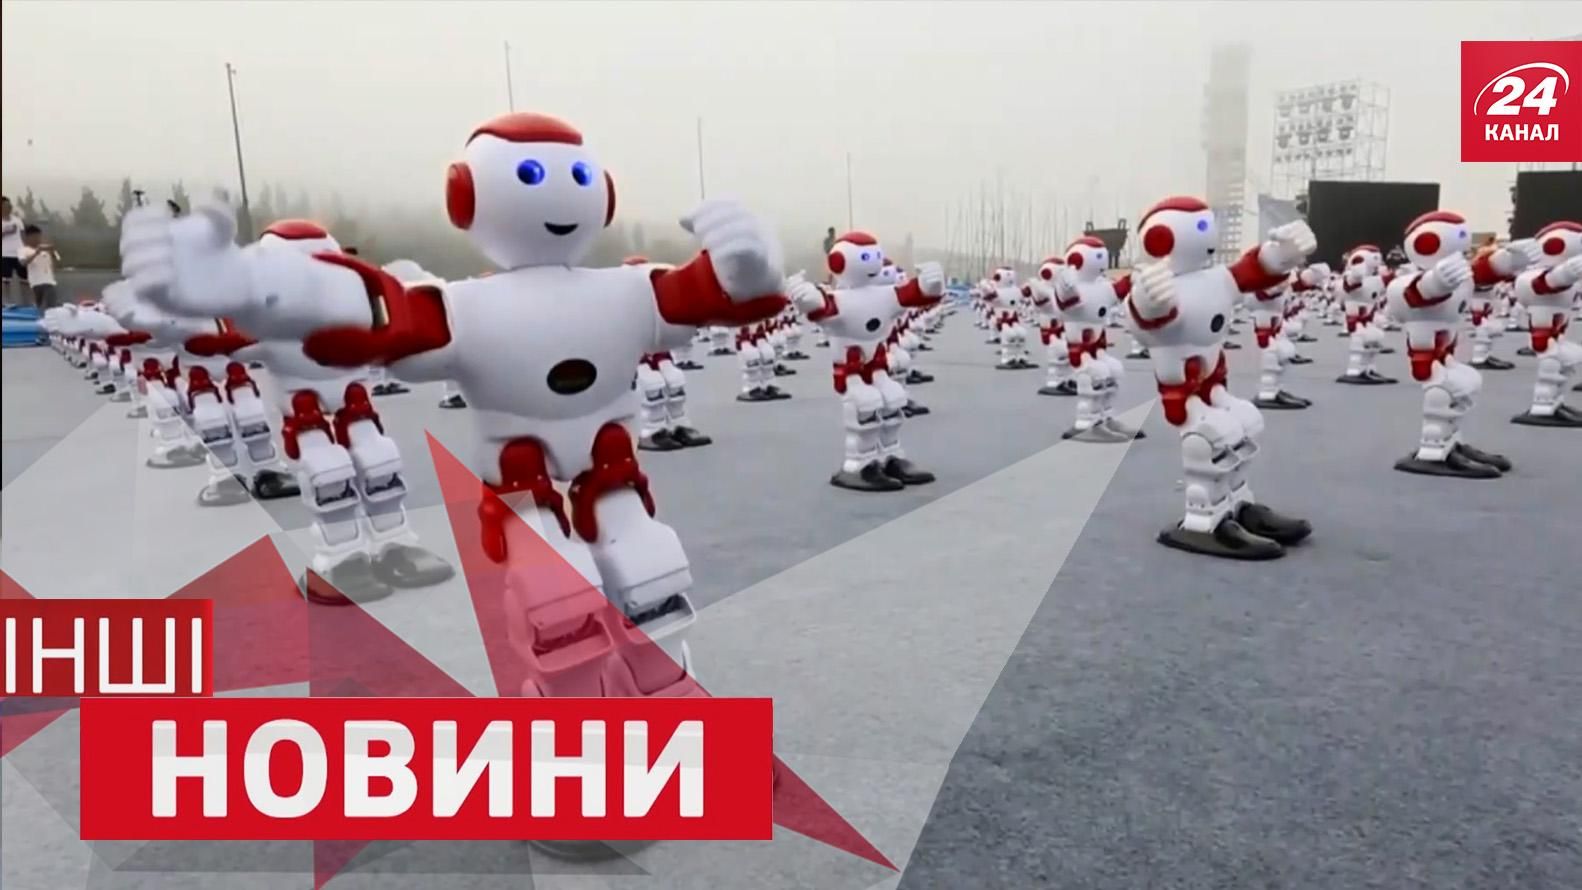 ІНШІ новини. Вражаючий танець тисячі роботів. Помста покемонів